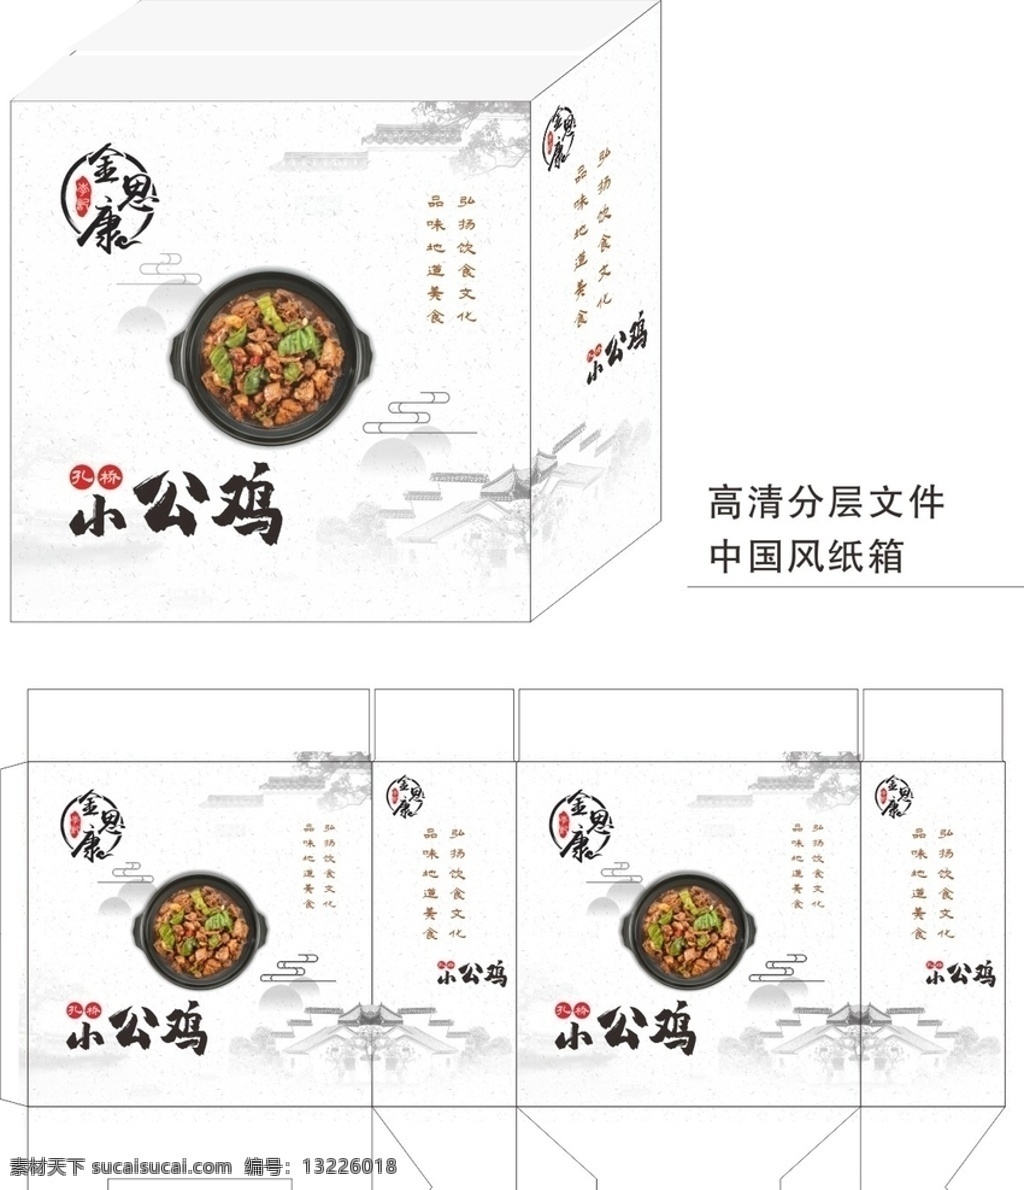 中国风包装盒 展开图 炒菜 水墨风 简洁 大气 包装设计